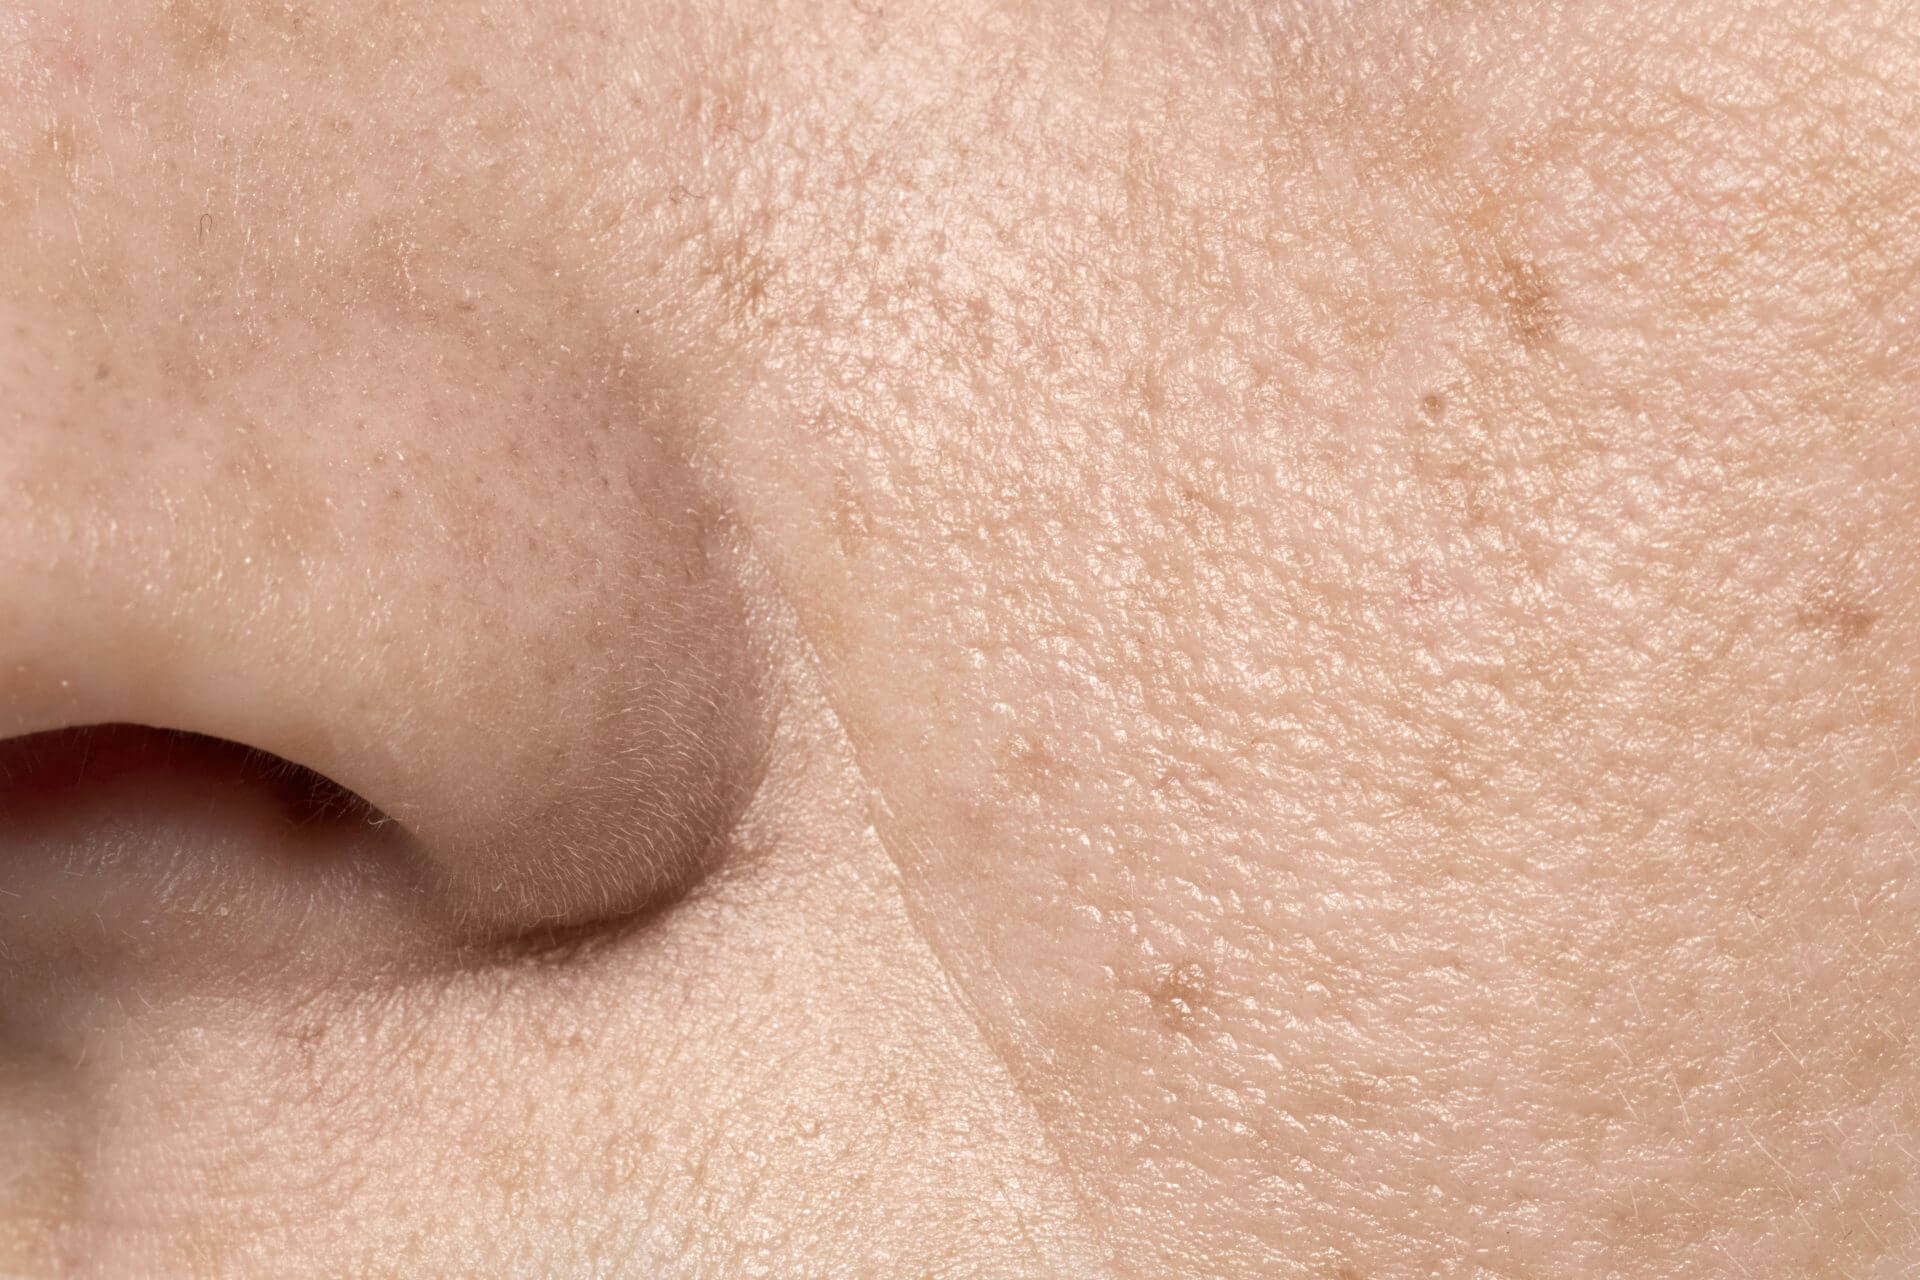 close up of facial pores